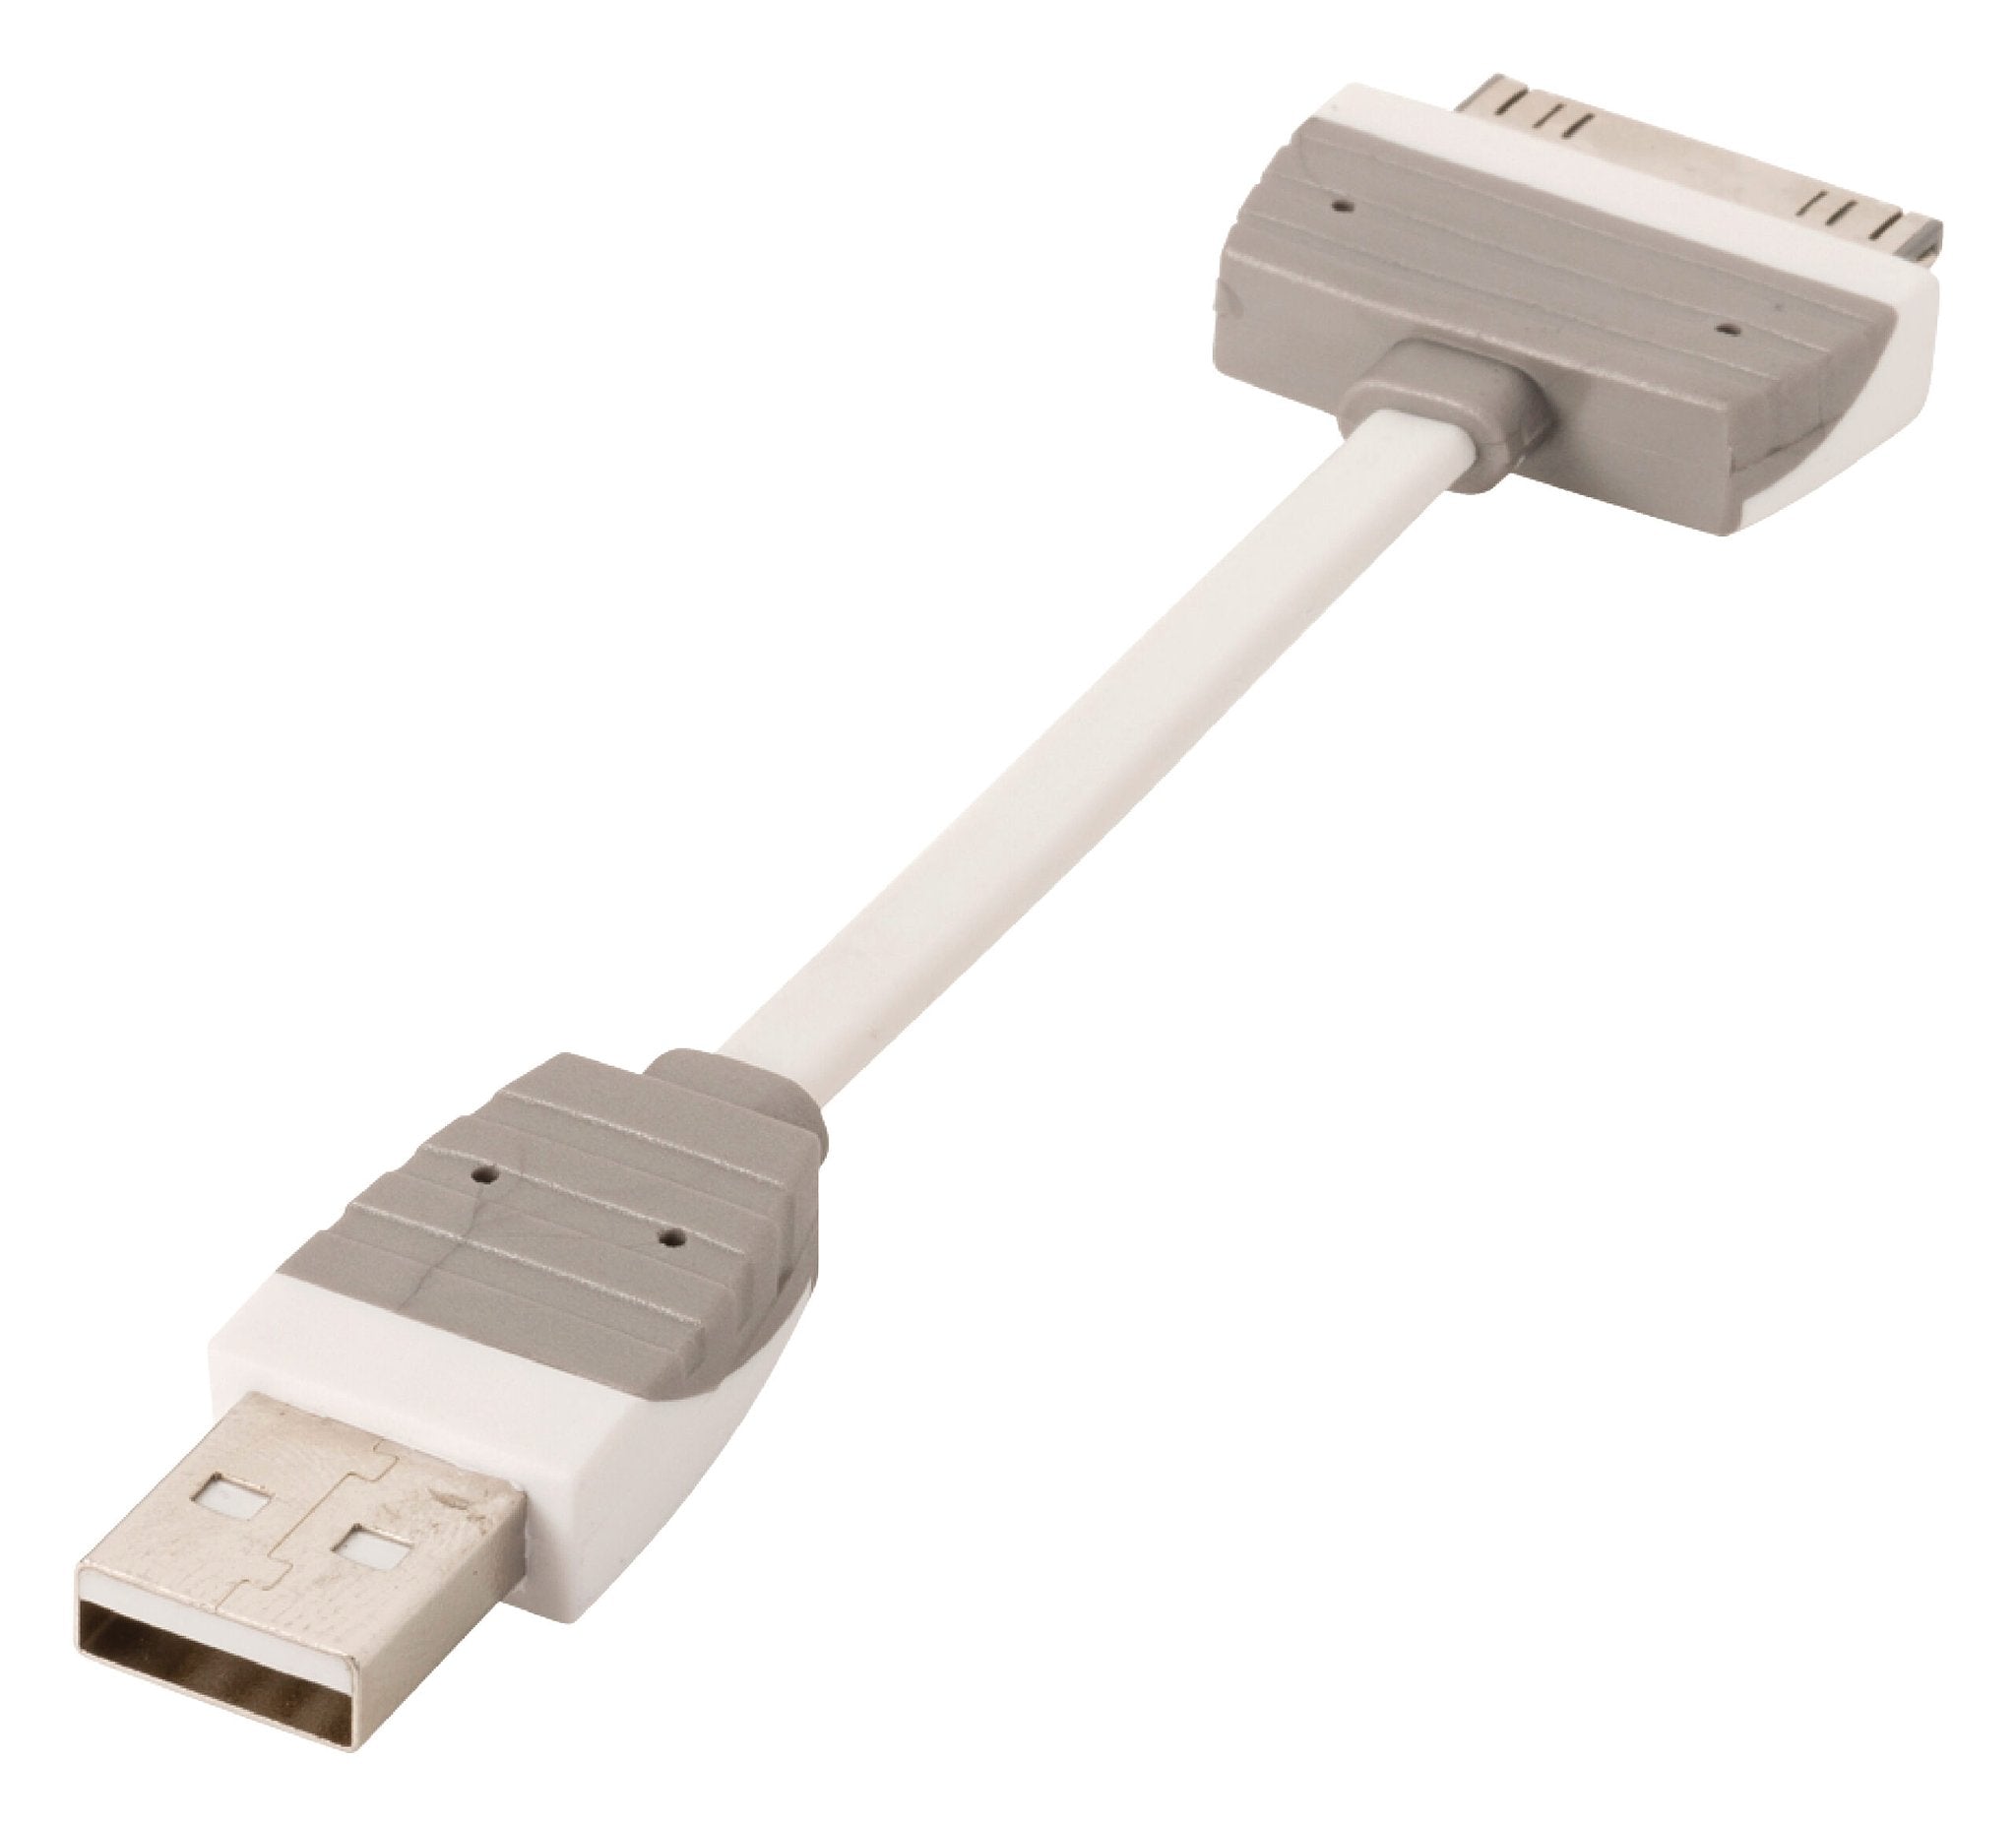 Data en Oplaadkabel Apple Dock 30-Pins - USB A Male 0.10 m Wit Bandridge